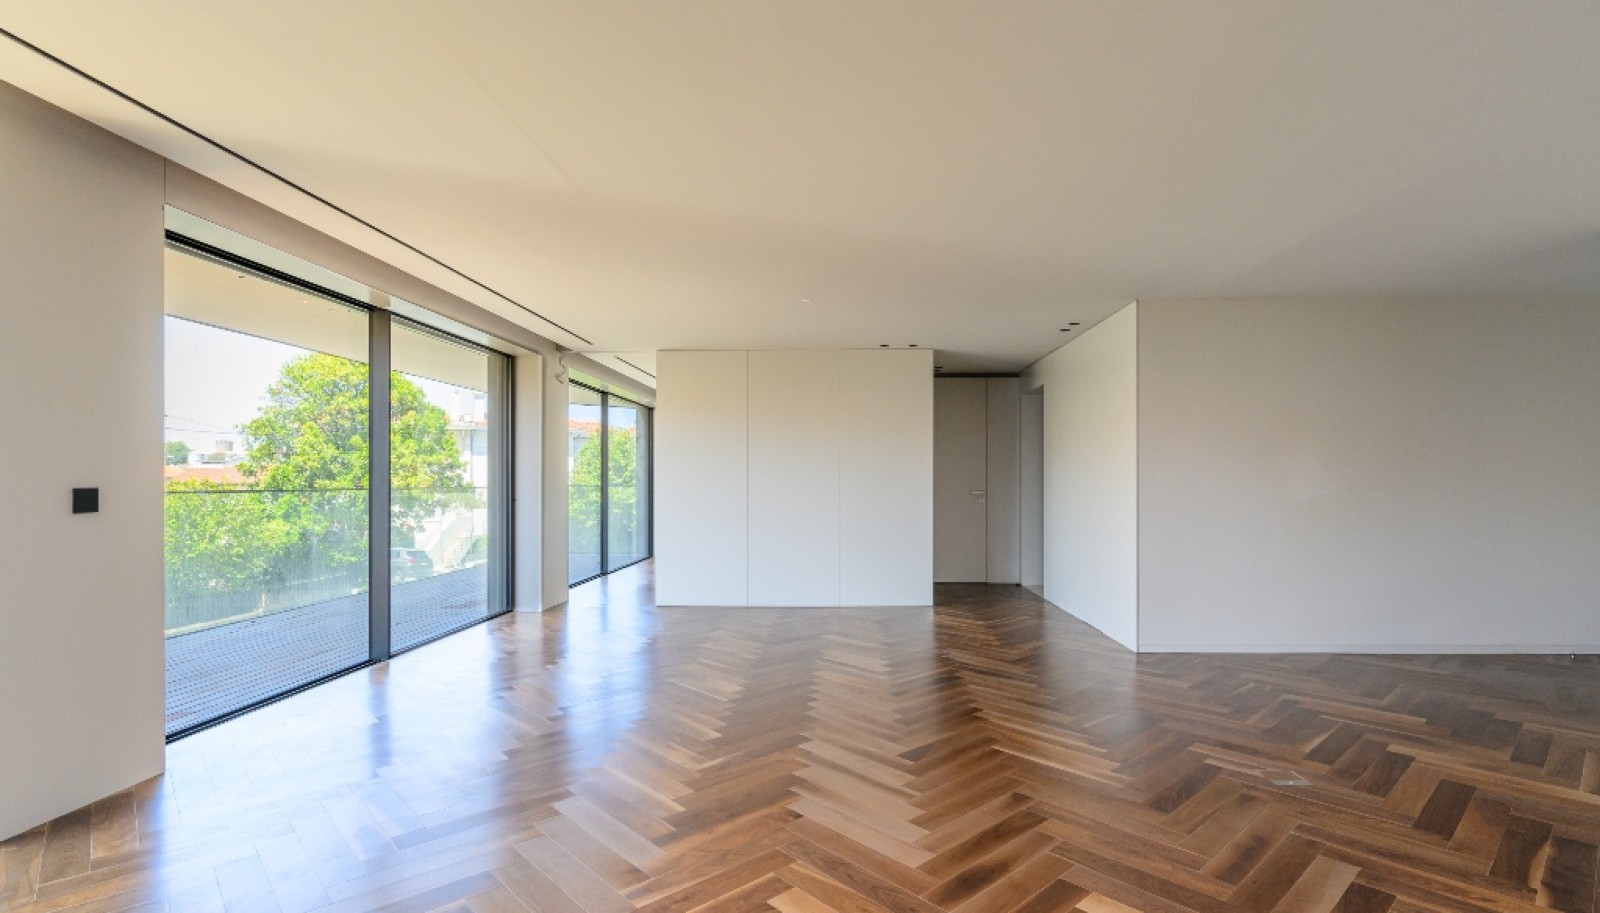 Venda: Apartamento novo com terraço, na Boavista, Porto_267525